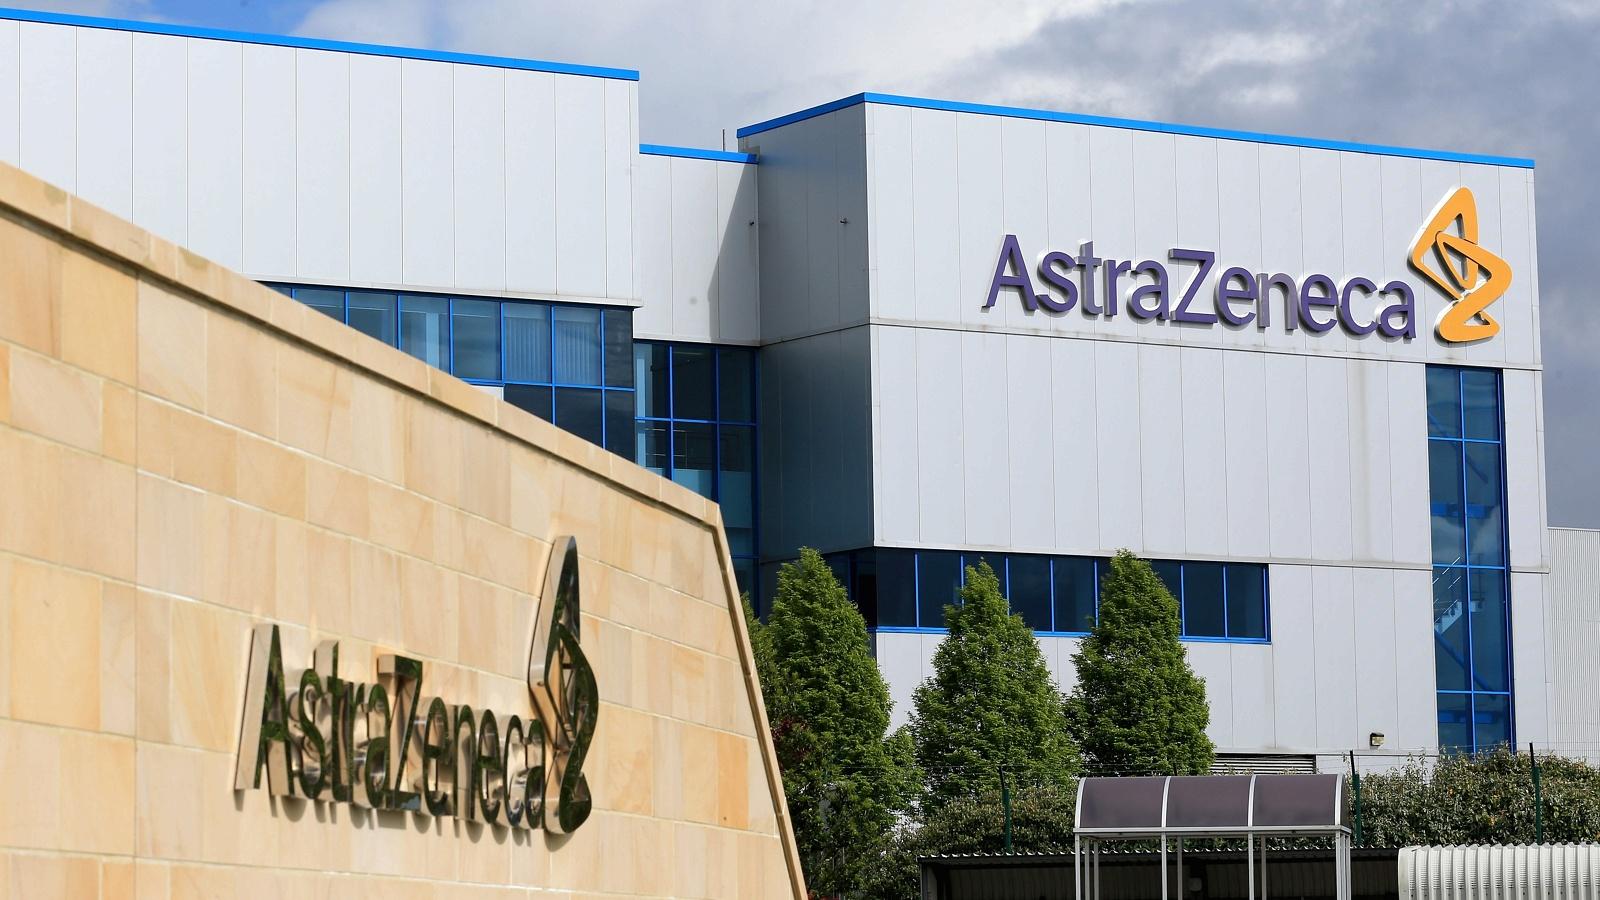 AstraZeneca là một công ty công nghệ sinh học và dược phẩm đa quốc gia của Anh-Thụy Điển, có trụ sở chính ở Cambridge, Anh. Ảnh: @AFP.